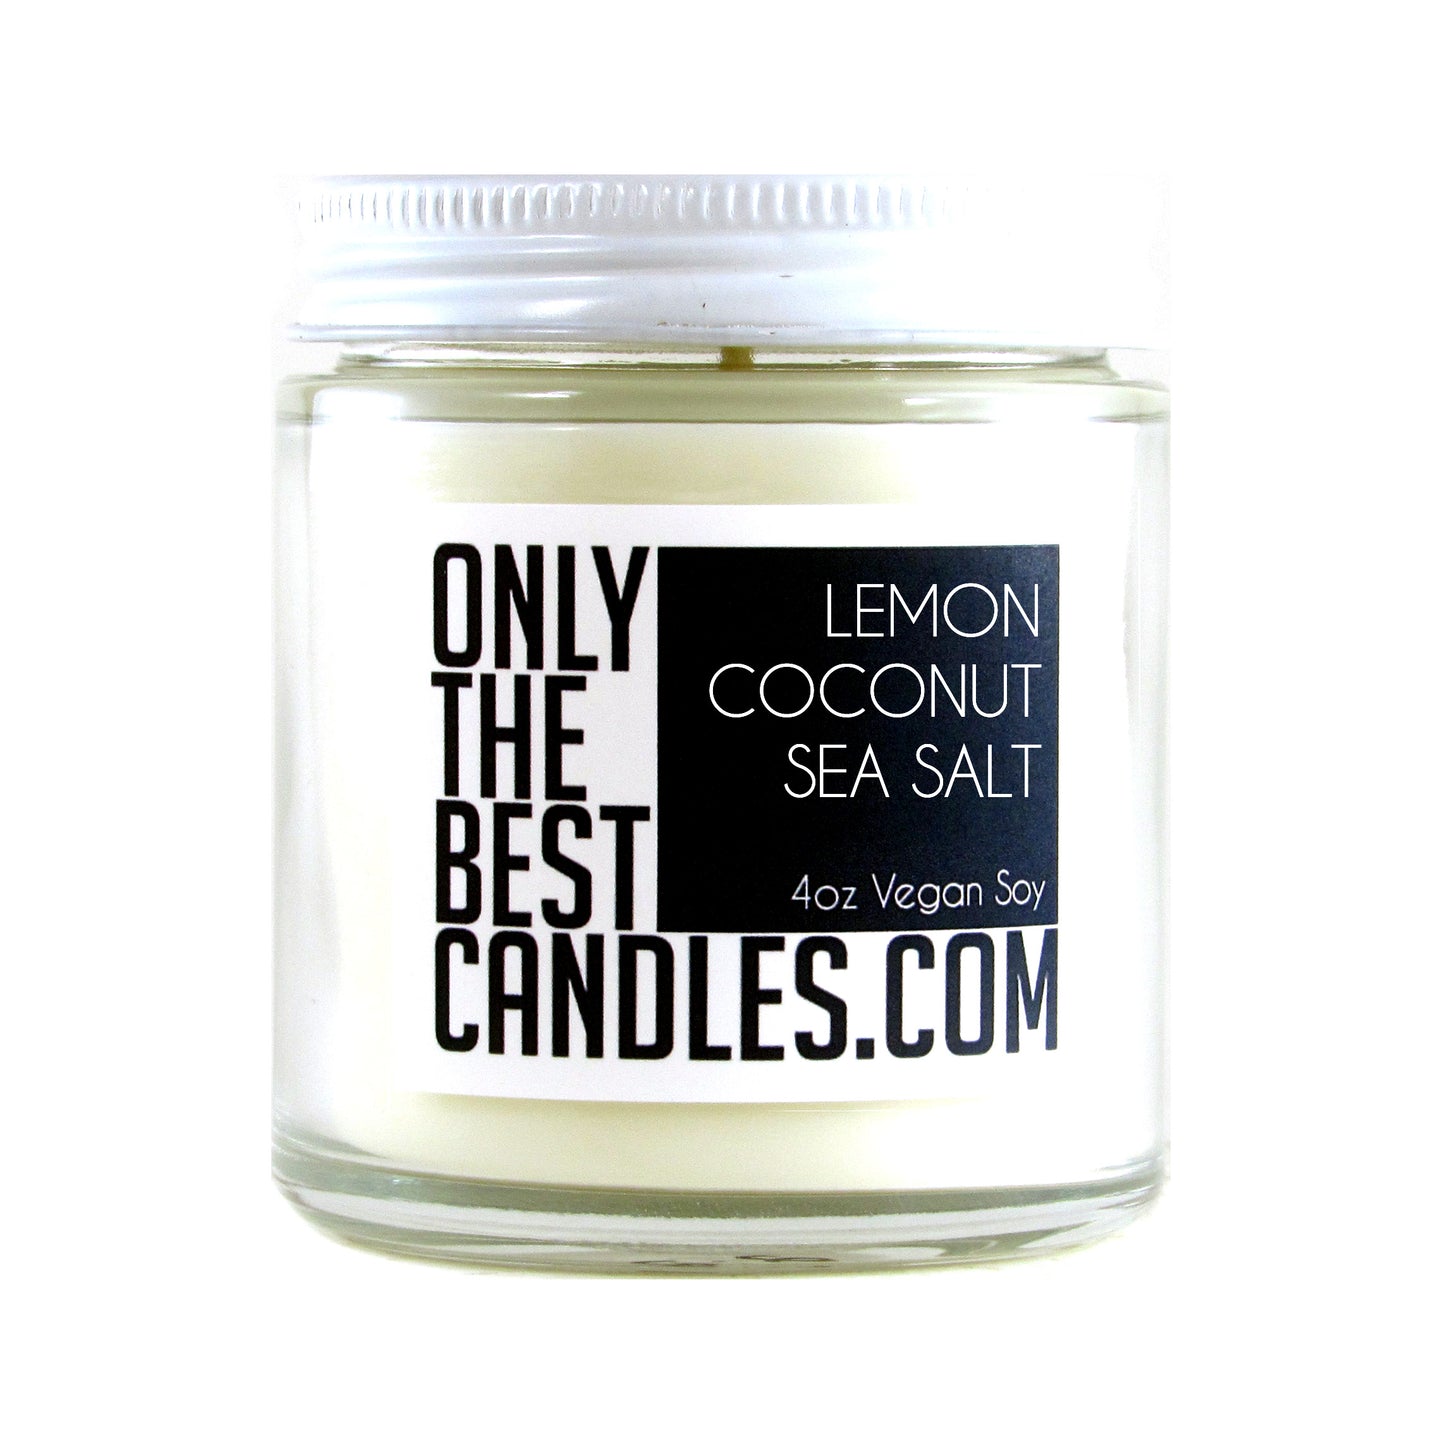 Lemon Coconut Sea Salt 4oz Candle